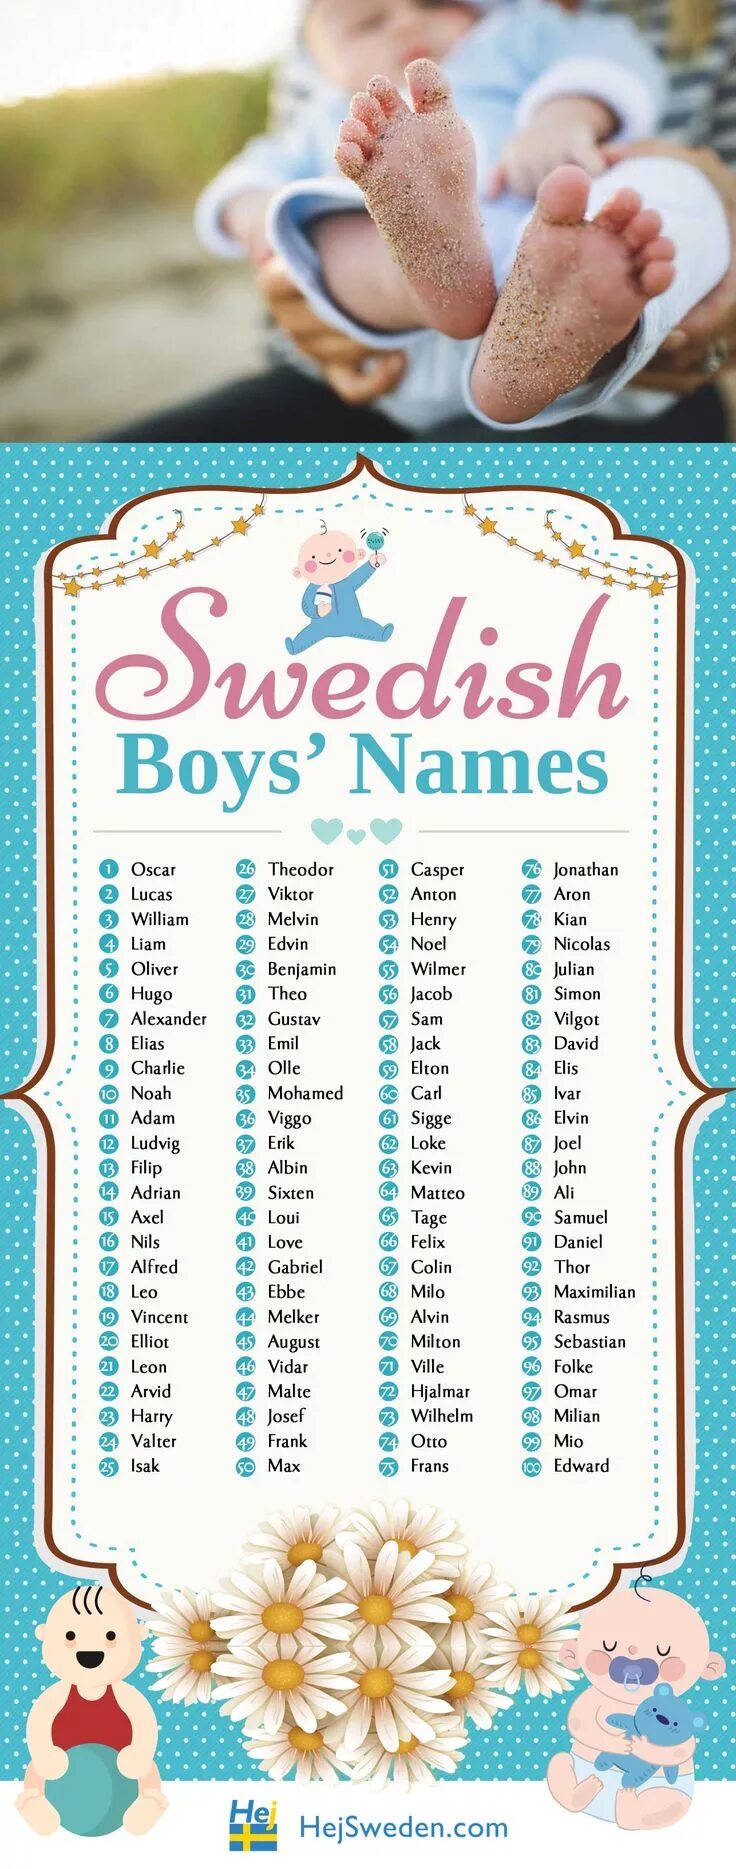 Имена новорожденных. Детские имена для новорожденных. Имена для новорожденных мальчиков. Имя для новорожденного мальчика.